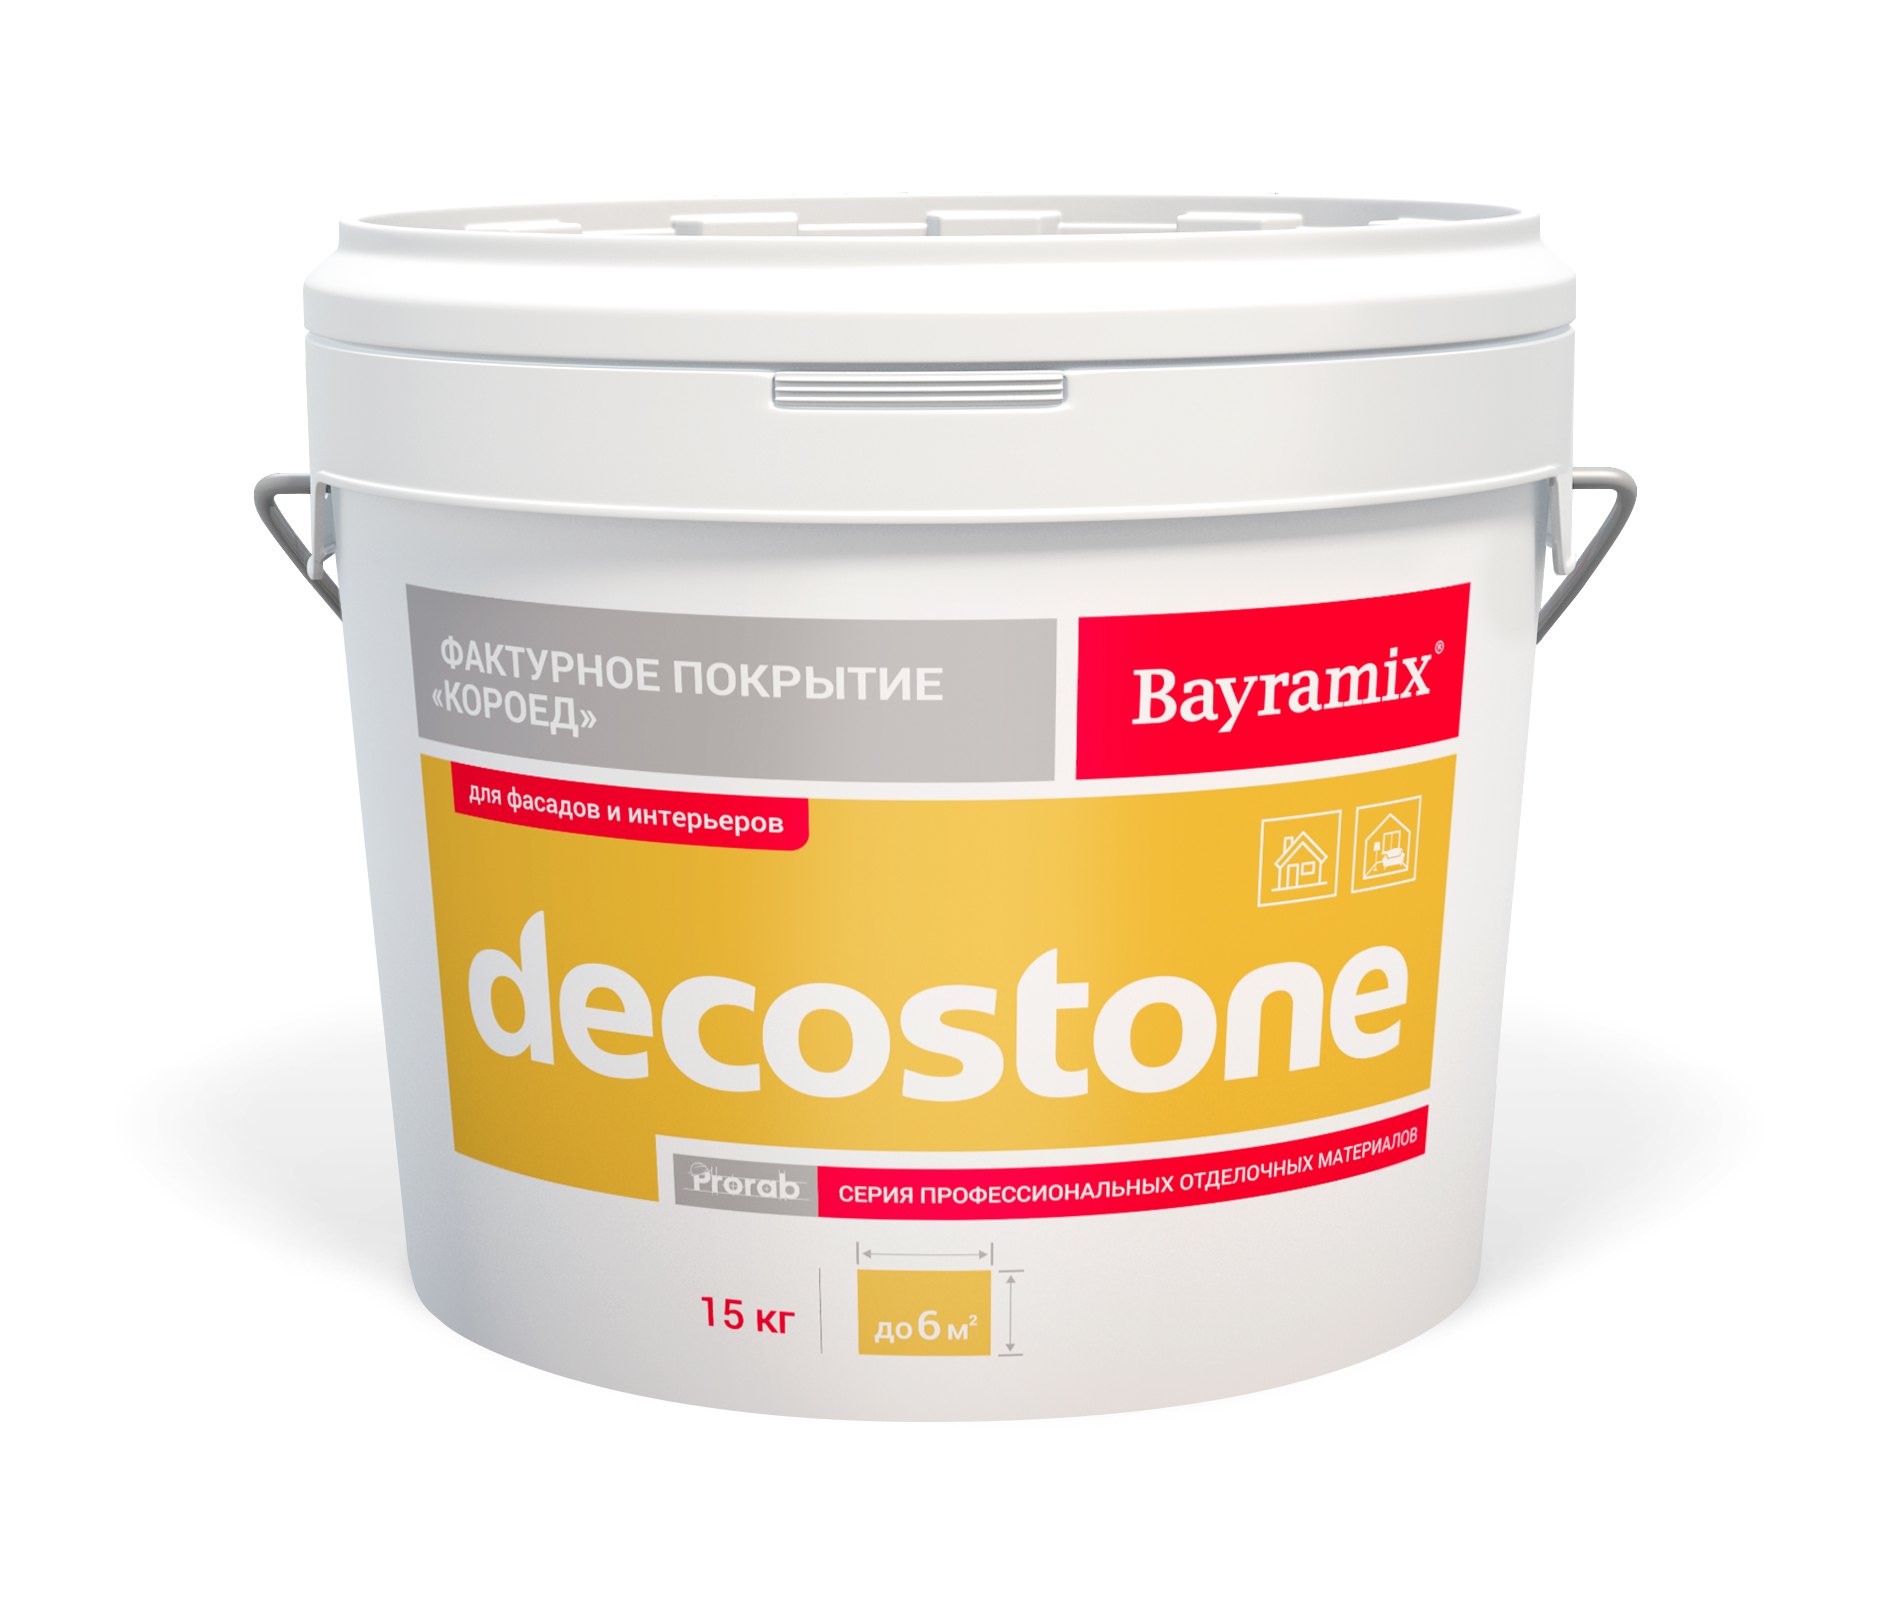 Покрытие Bayramix DECOSTONE 001 M, фактурное, 15 кг